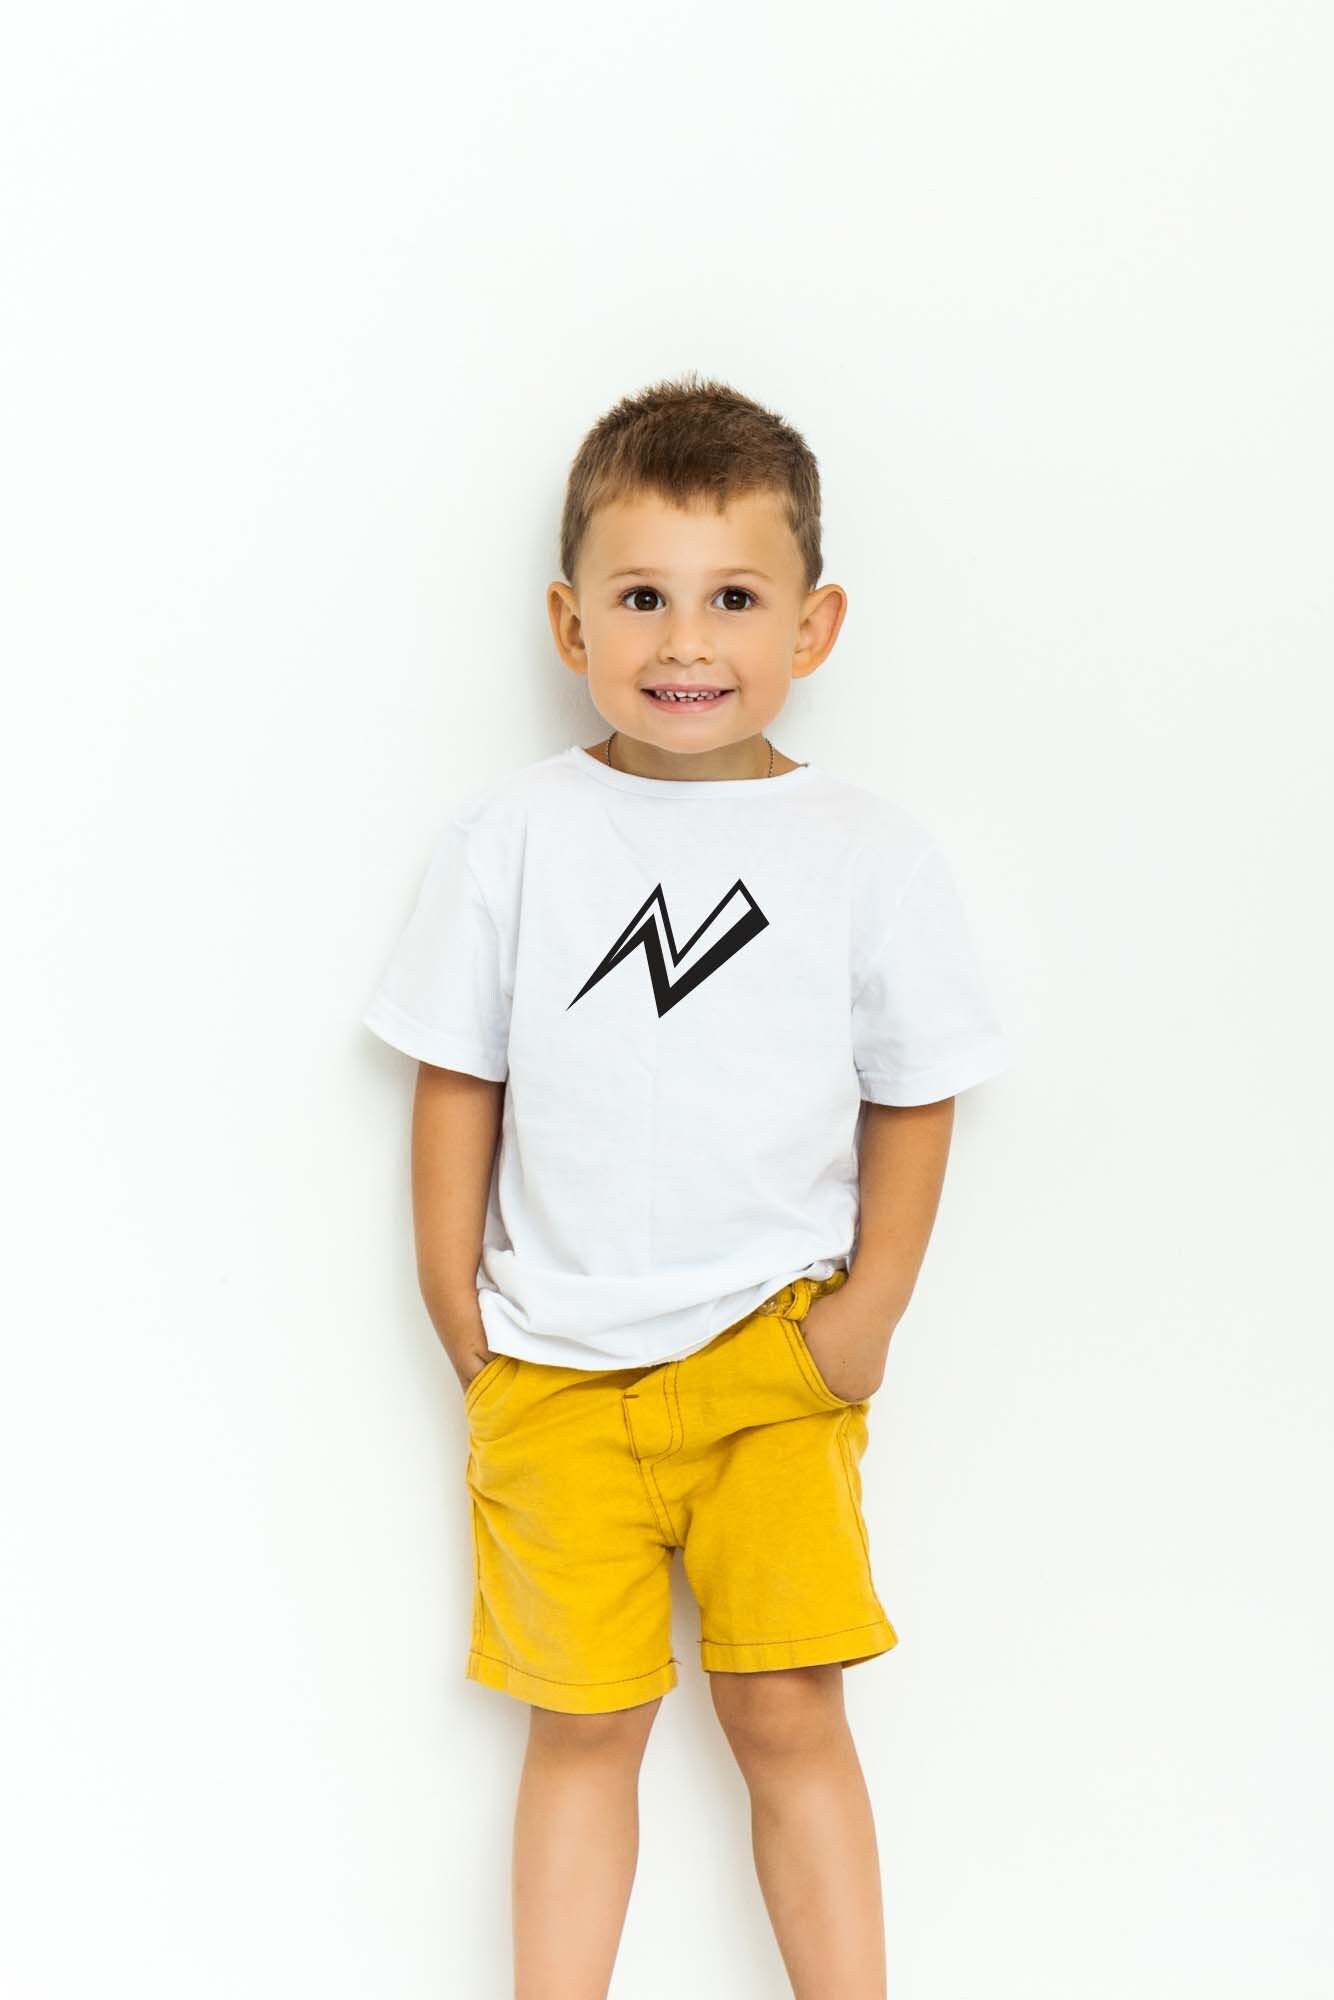 Lightning Bolt T shirt for kids, Lightning t shirt, Kids Lightning Bolt T-Shirt